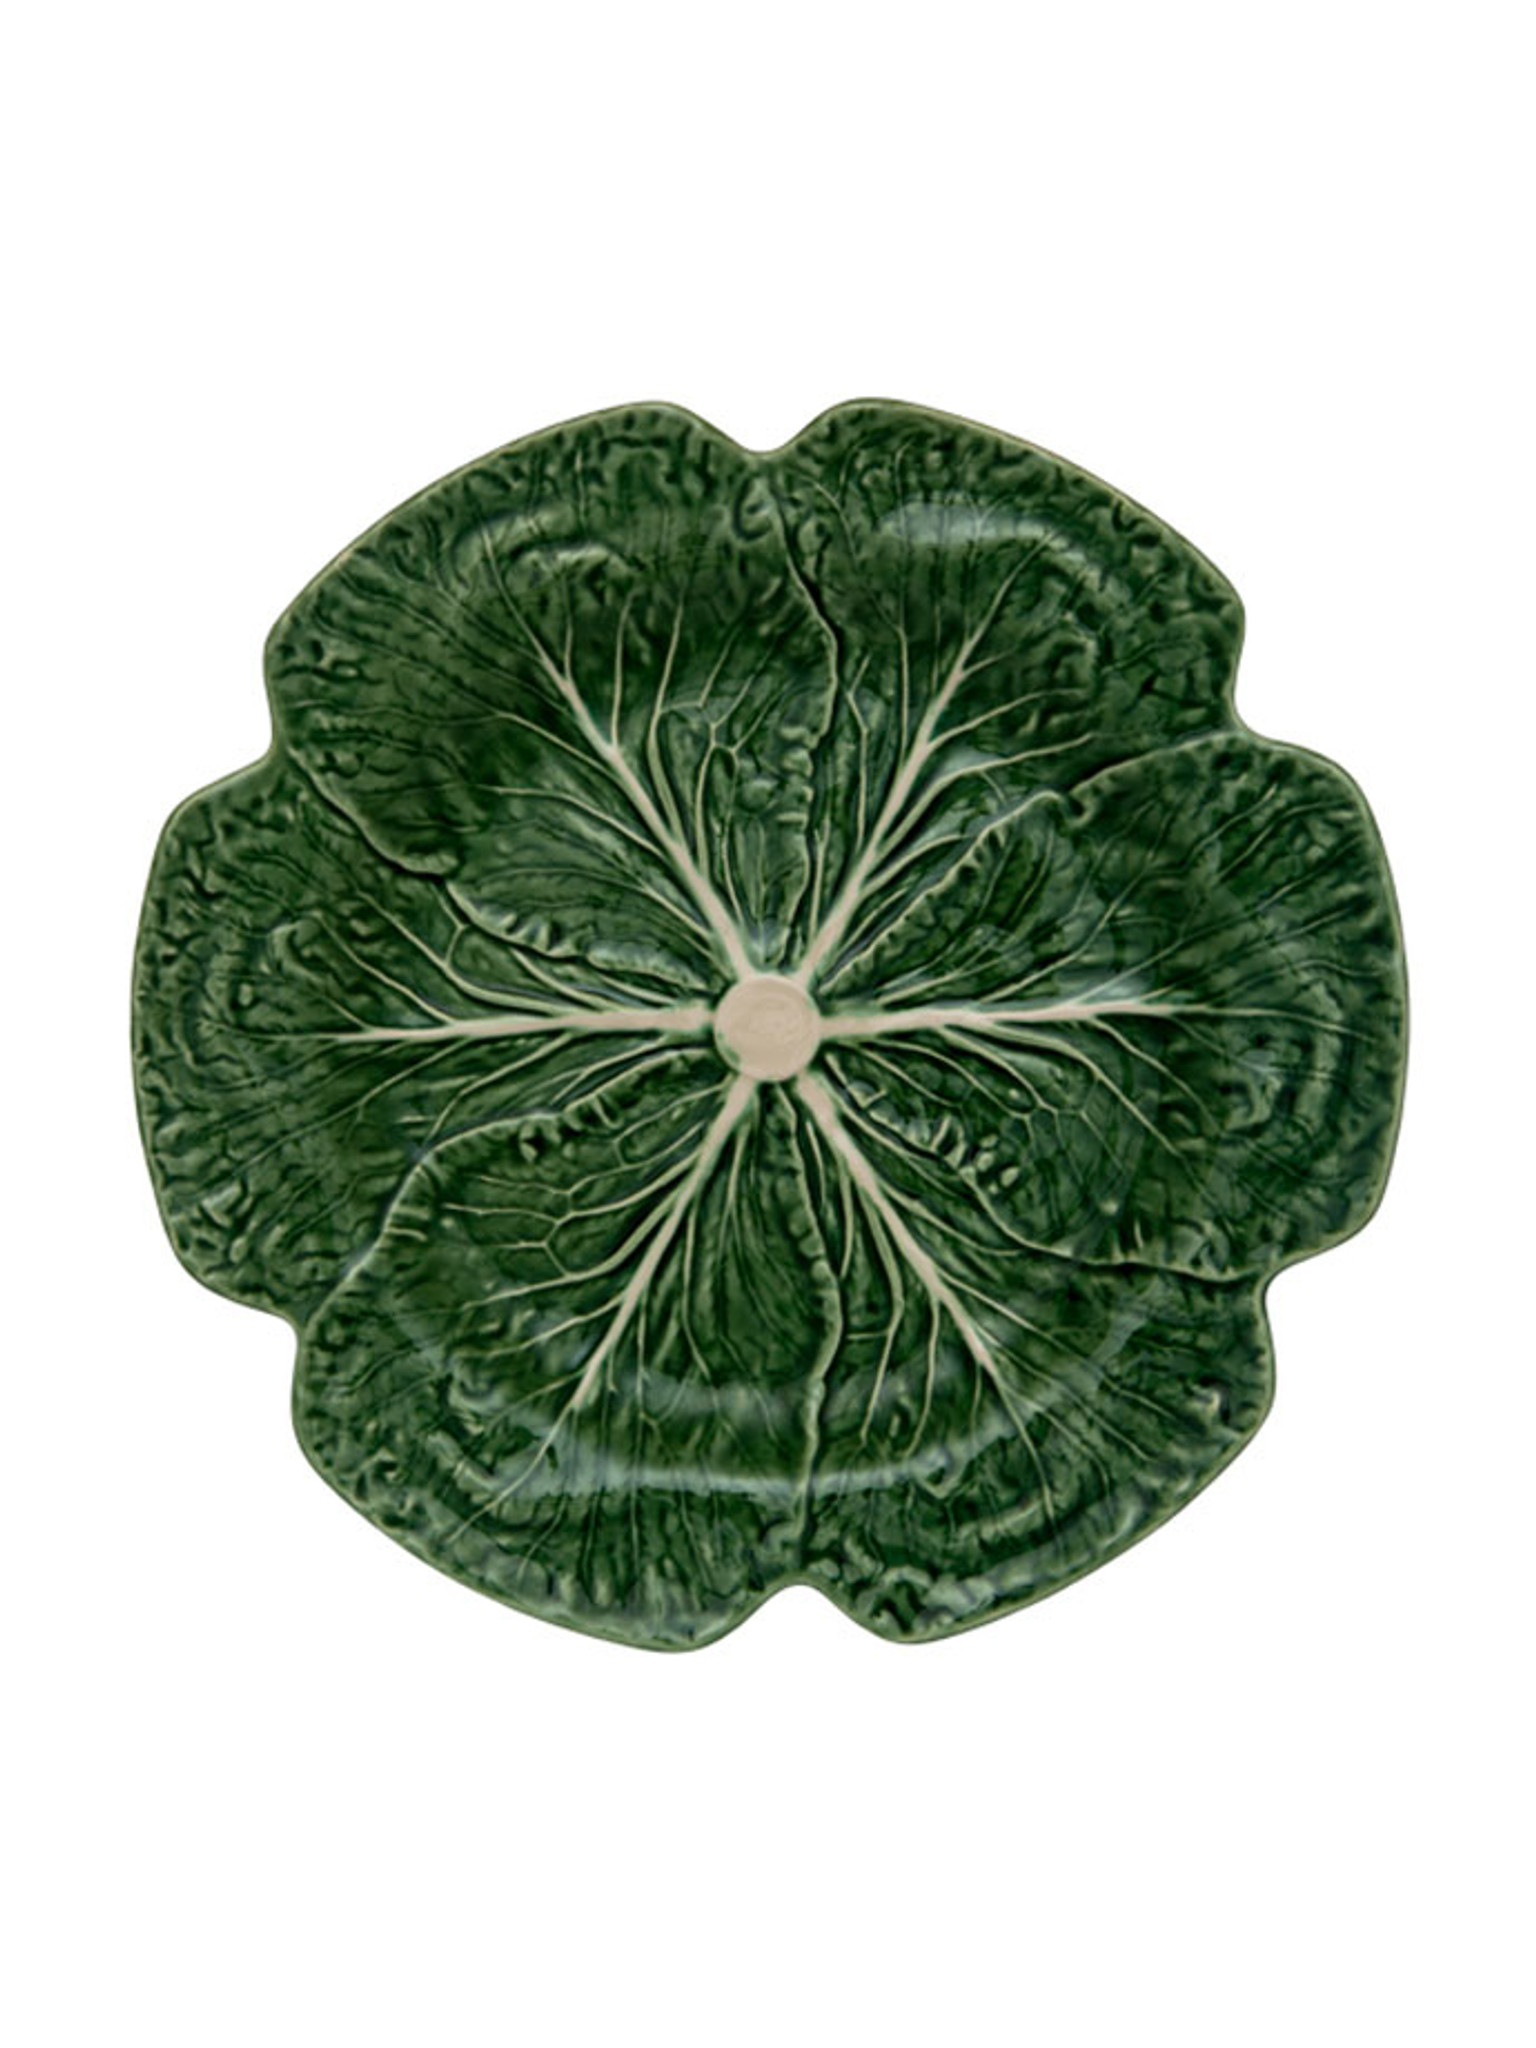 Bordallo Pinheiro Cabbage Charger Plate Green Natural 65000438 - HomeBello